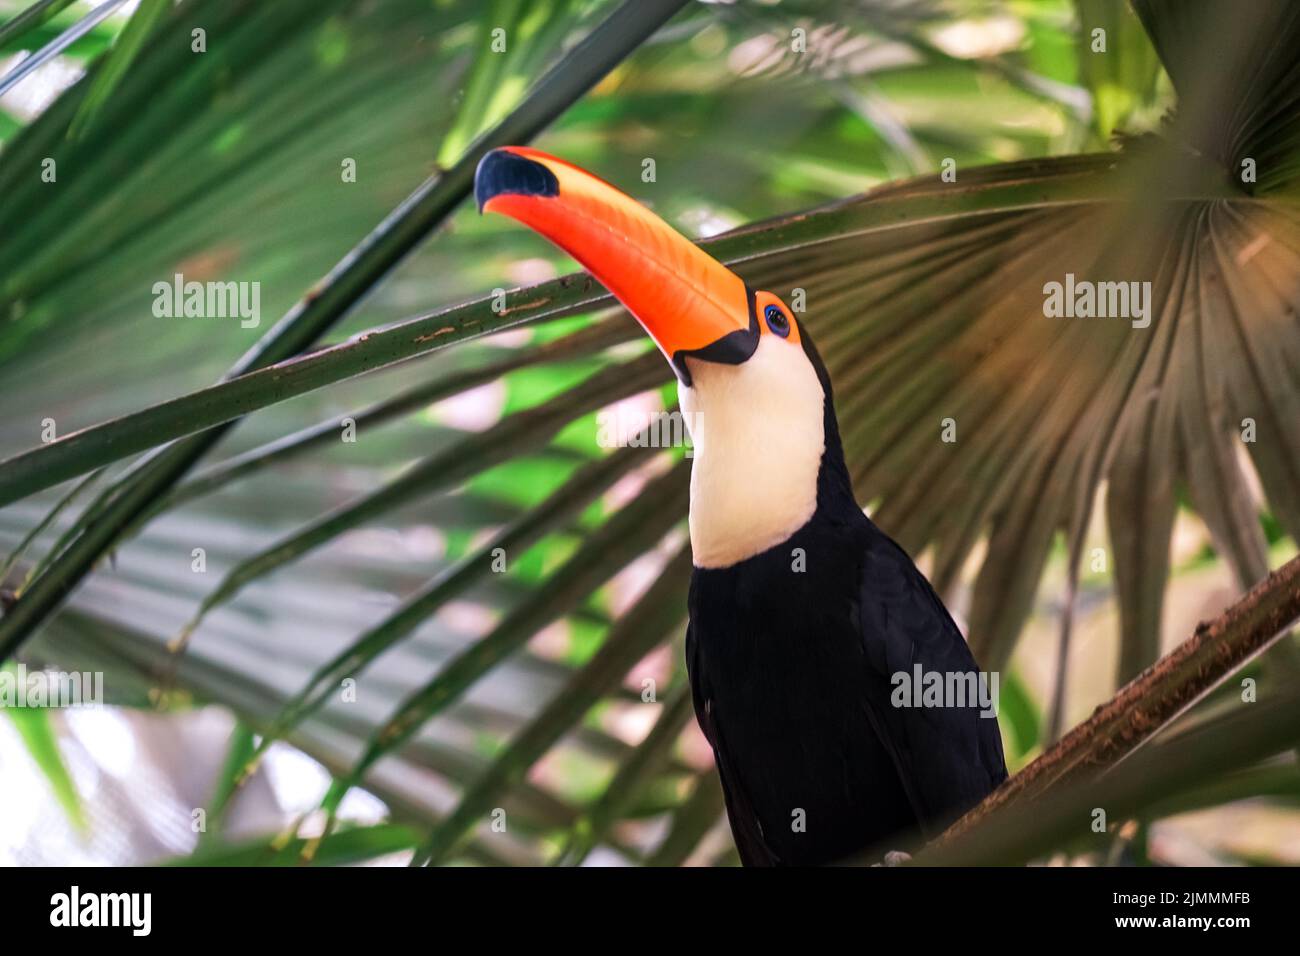 Toco Toucan (colorful tropical bird) Stock Photo